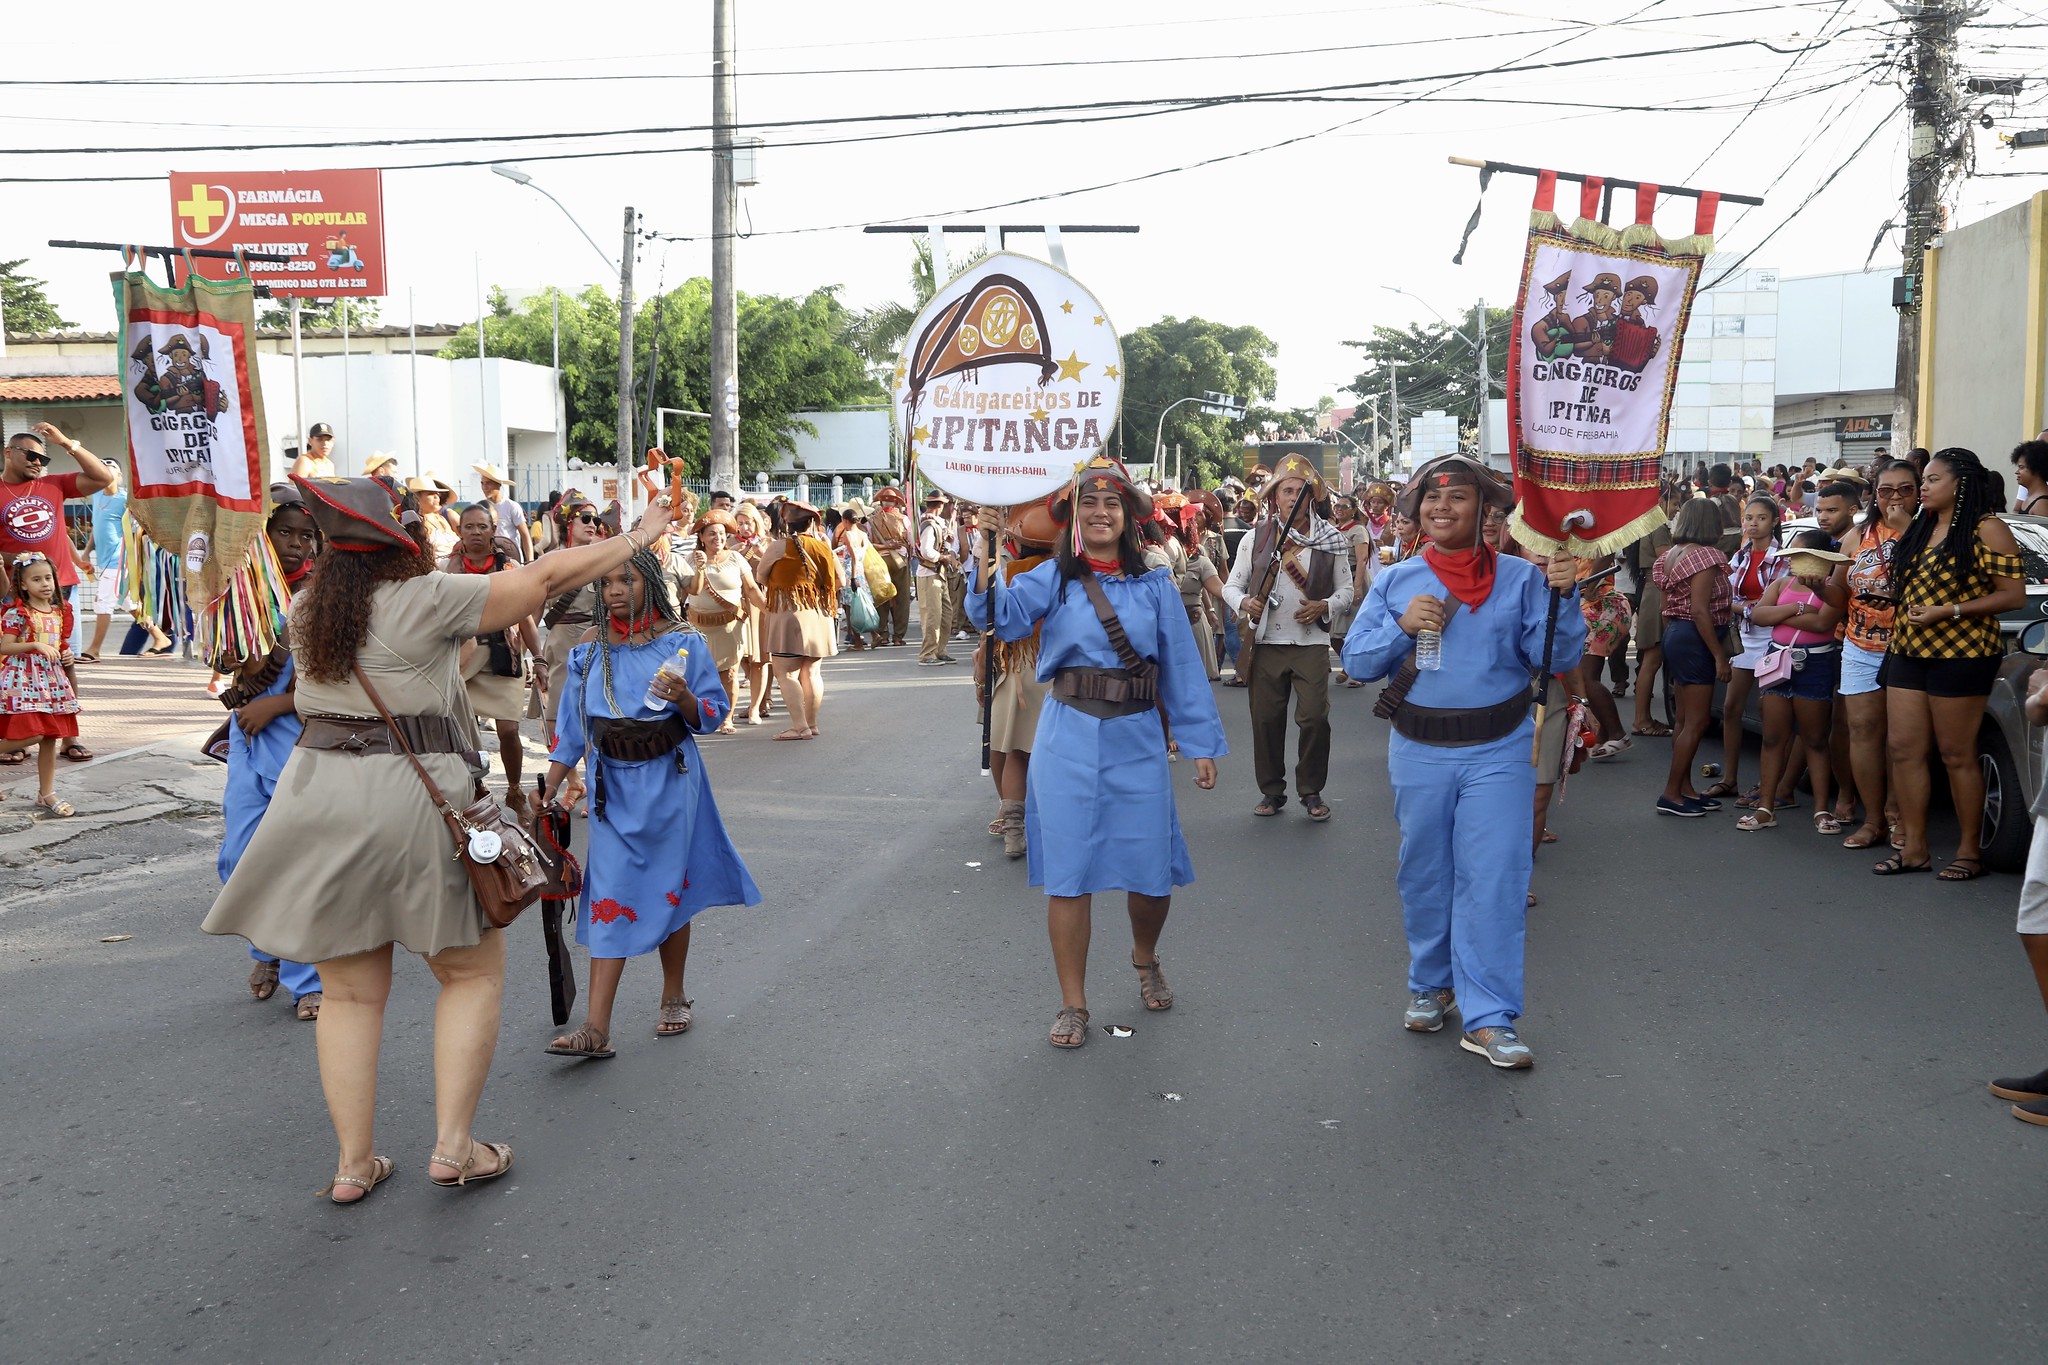 Arrai de Ipitanga: manifestaes culturais vo animar ruas do Centro no dia 24; confira programao 